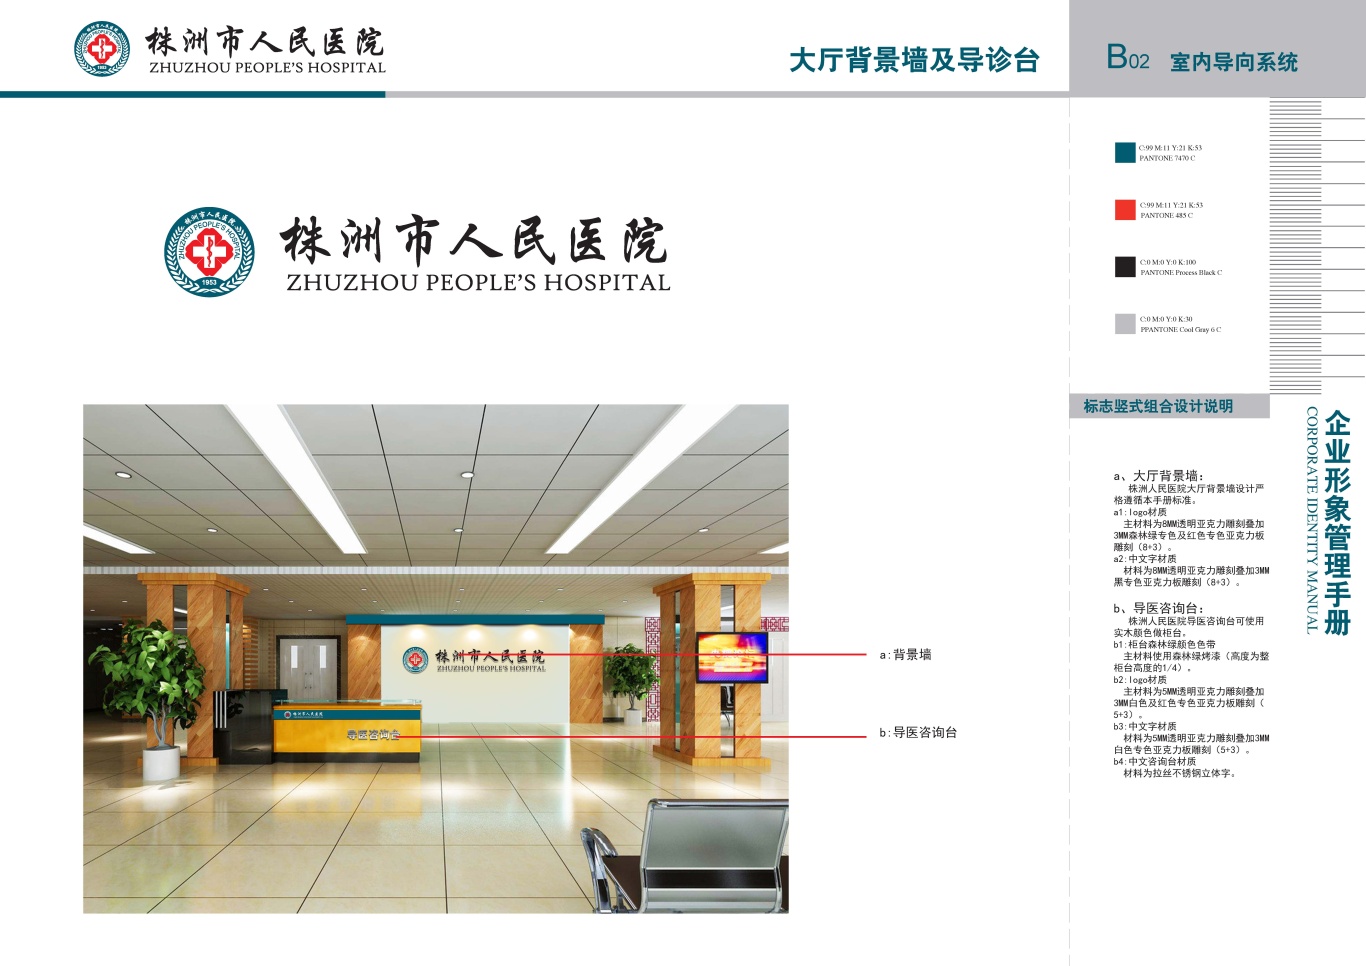 株洲市人民医院vis手册设计项目图12